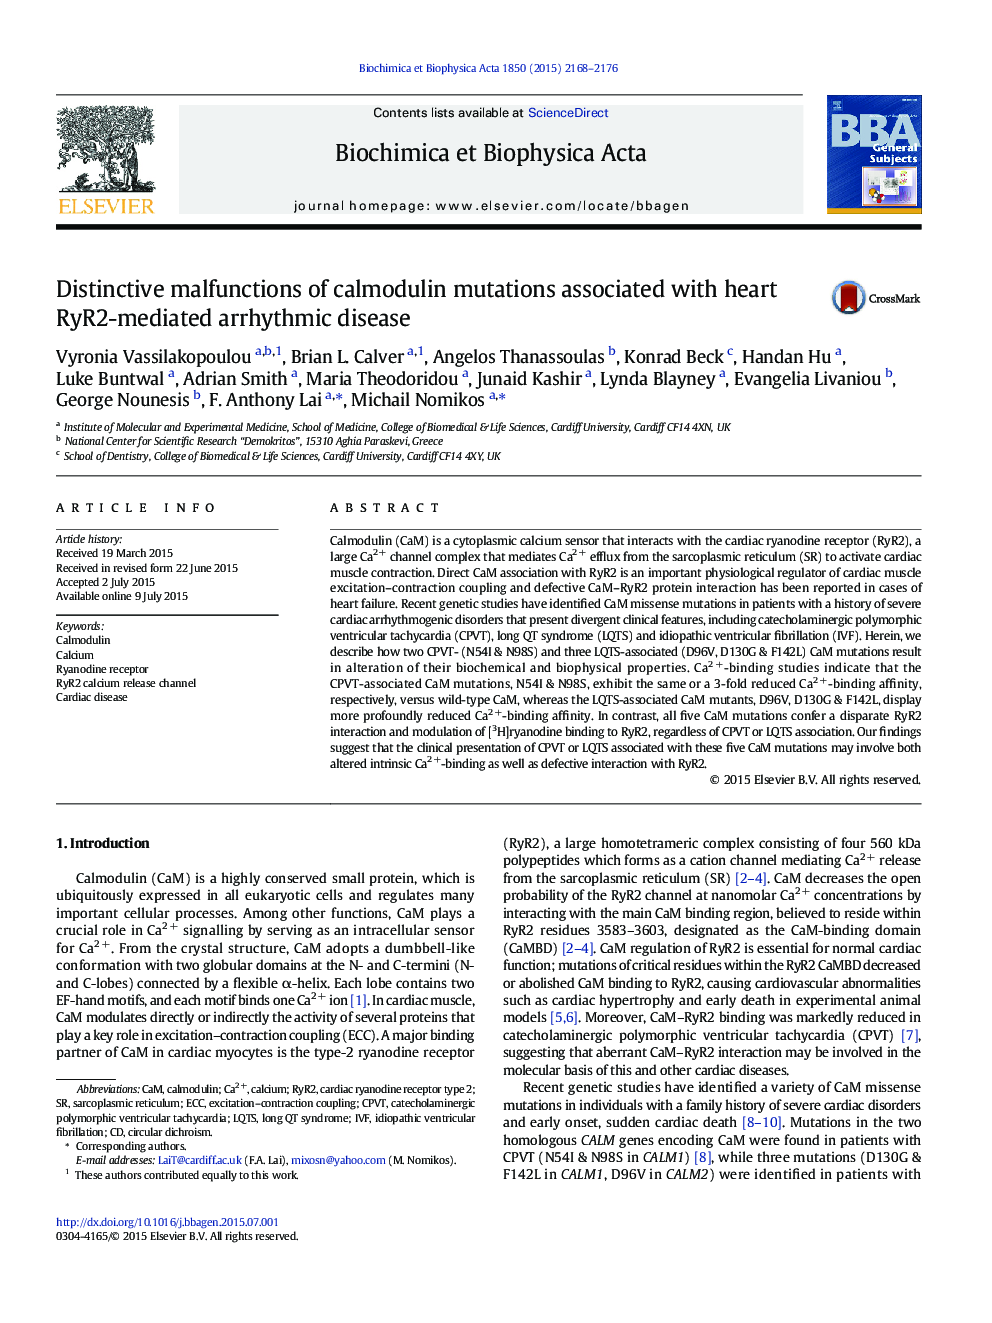 Distinctive malfunctions of calmodulin mutations associated with heart RyR2-mediated arrhythmic disease